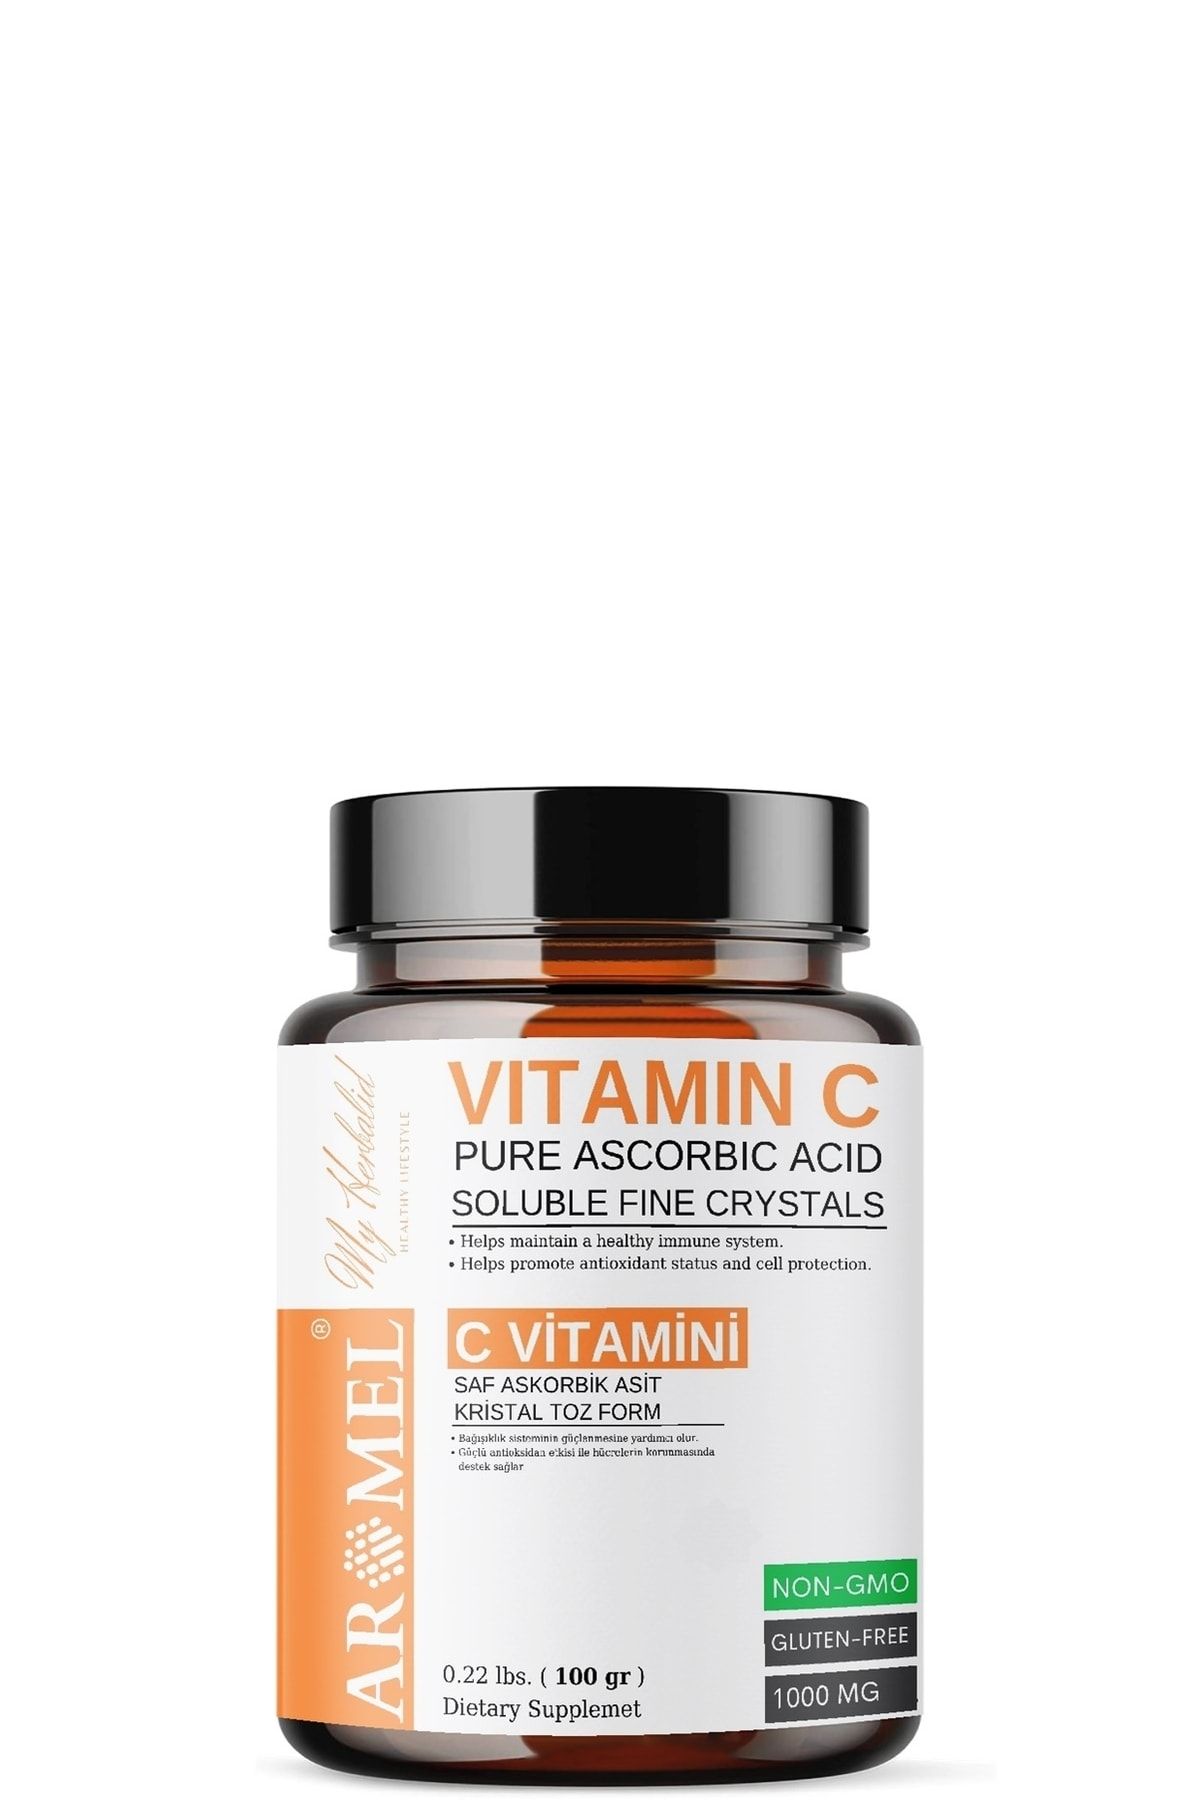 Aromel C Vitamini 100 gr | Askorbik Asit | Avrupa,ekstra Saf | Yenilebilir Toz Form